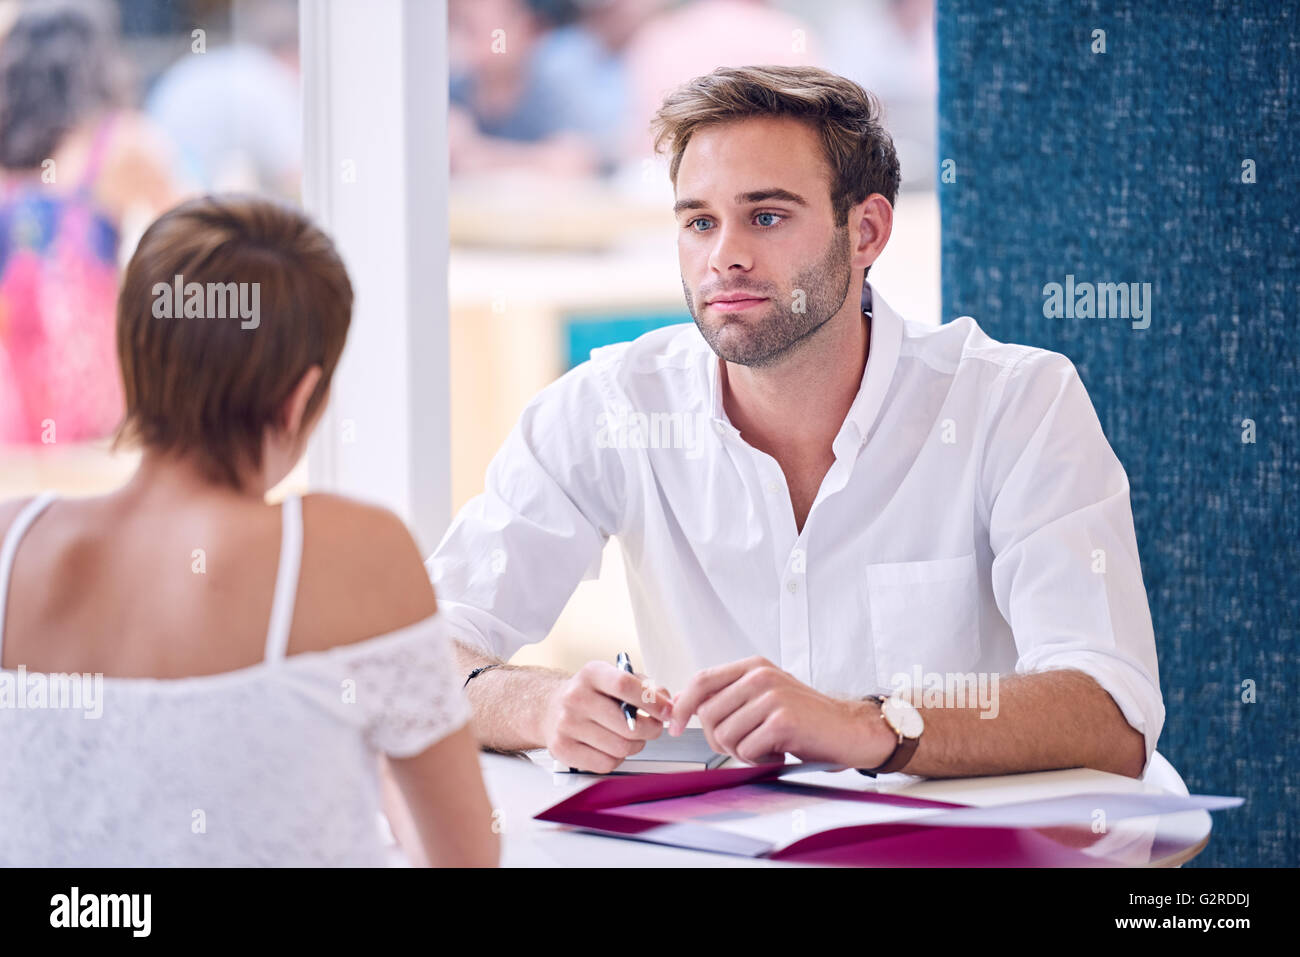 Businessman en prêtant attention à sa partenaire féminine au cours de la réunion d'affaires Banque D'Images